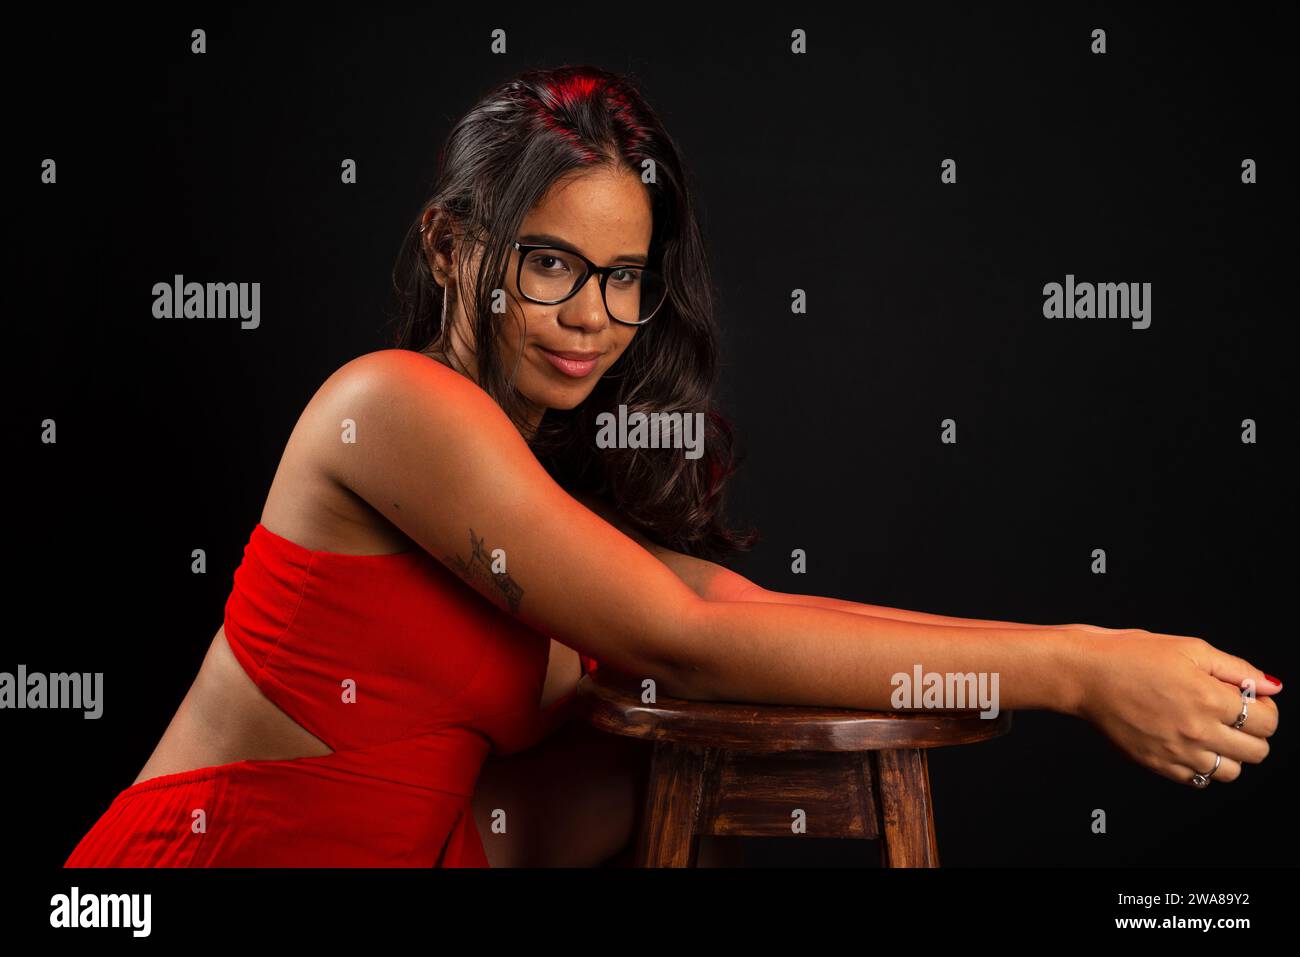 Retrato de la mujer joven hermosa que lleva gafas y en vestido rojo que se sienta posando para la foto. Aislado sobre fondo negro. Foto de stock